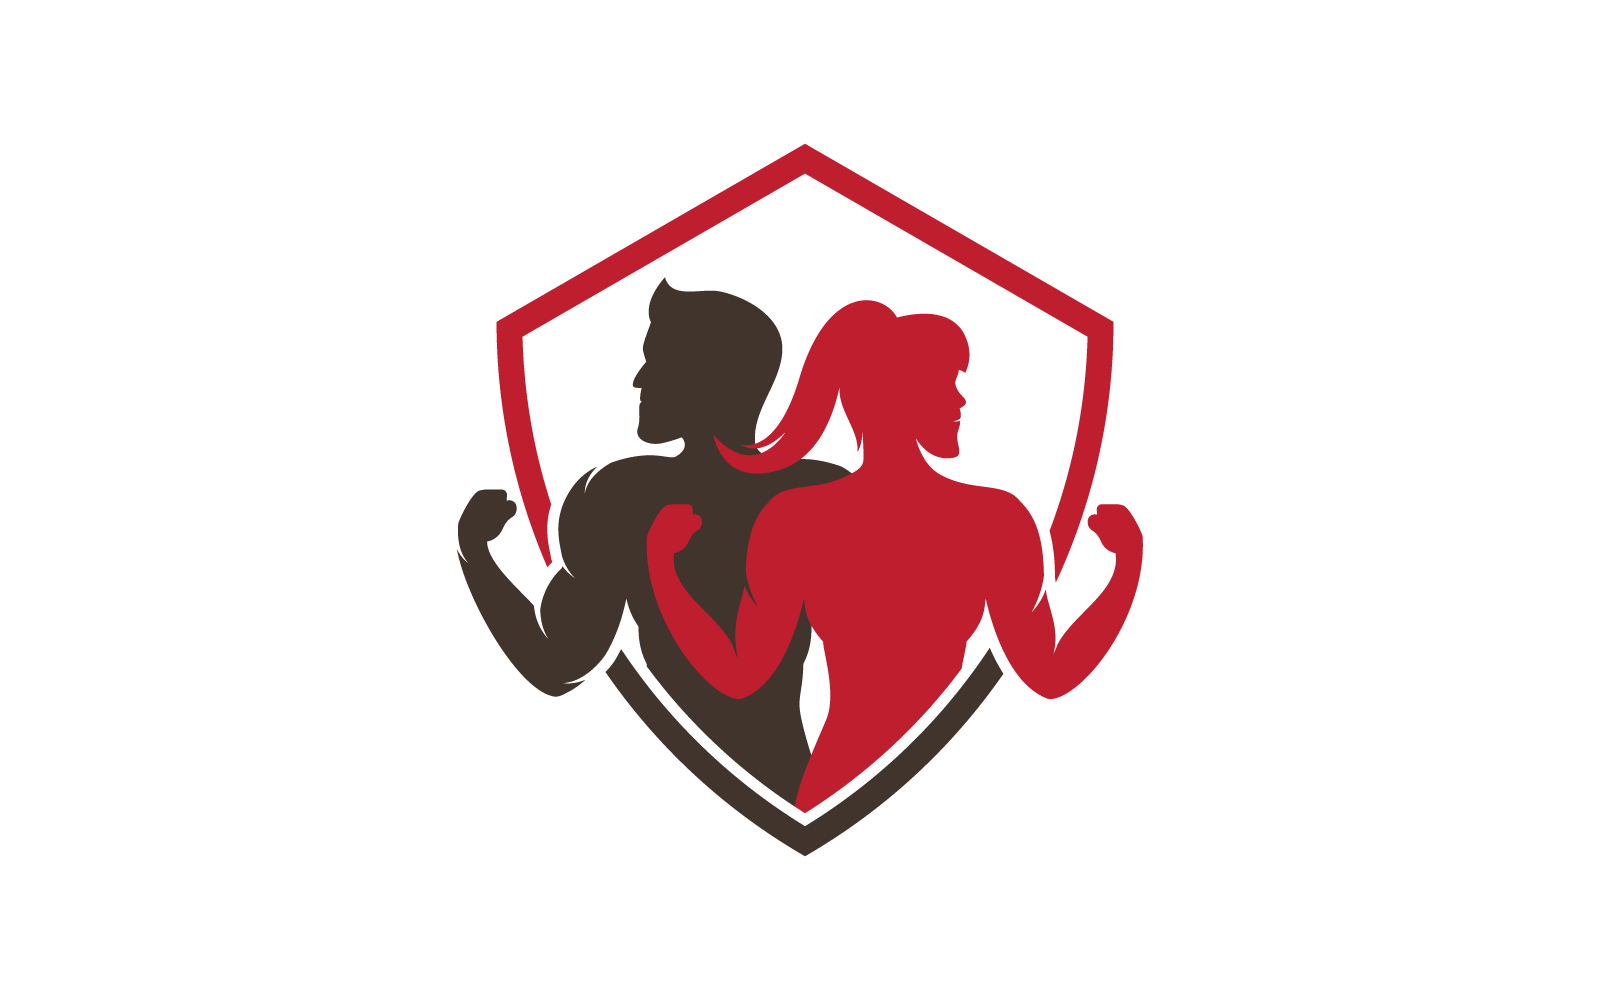 Gym design illustration logo template